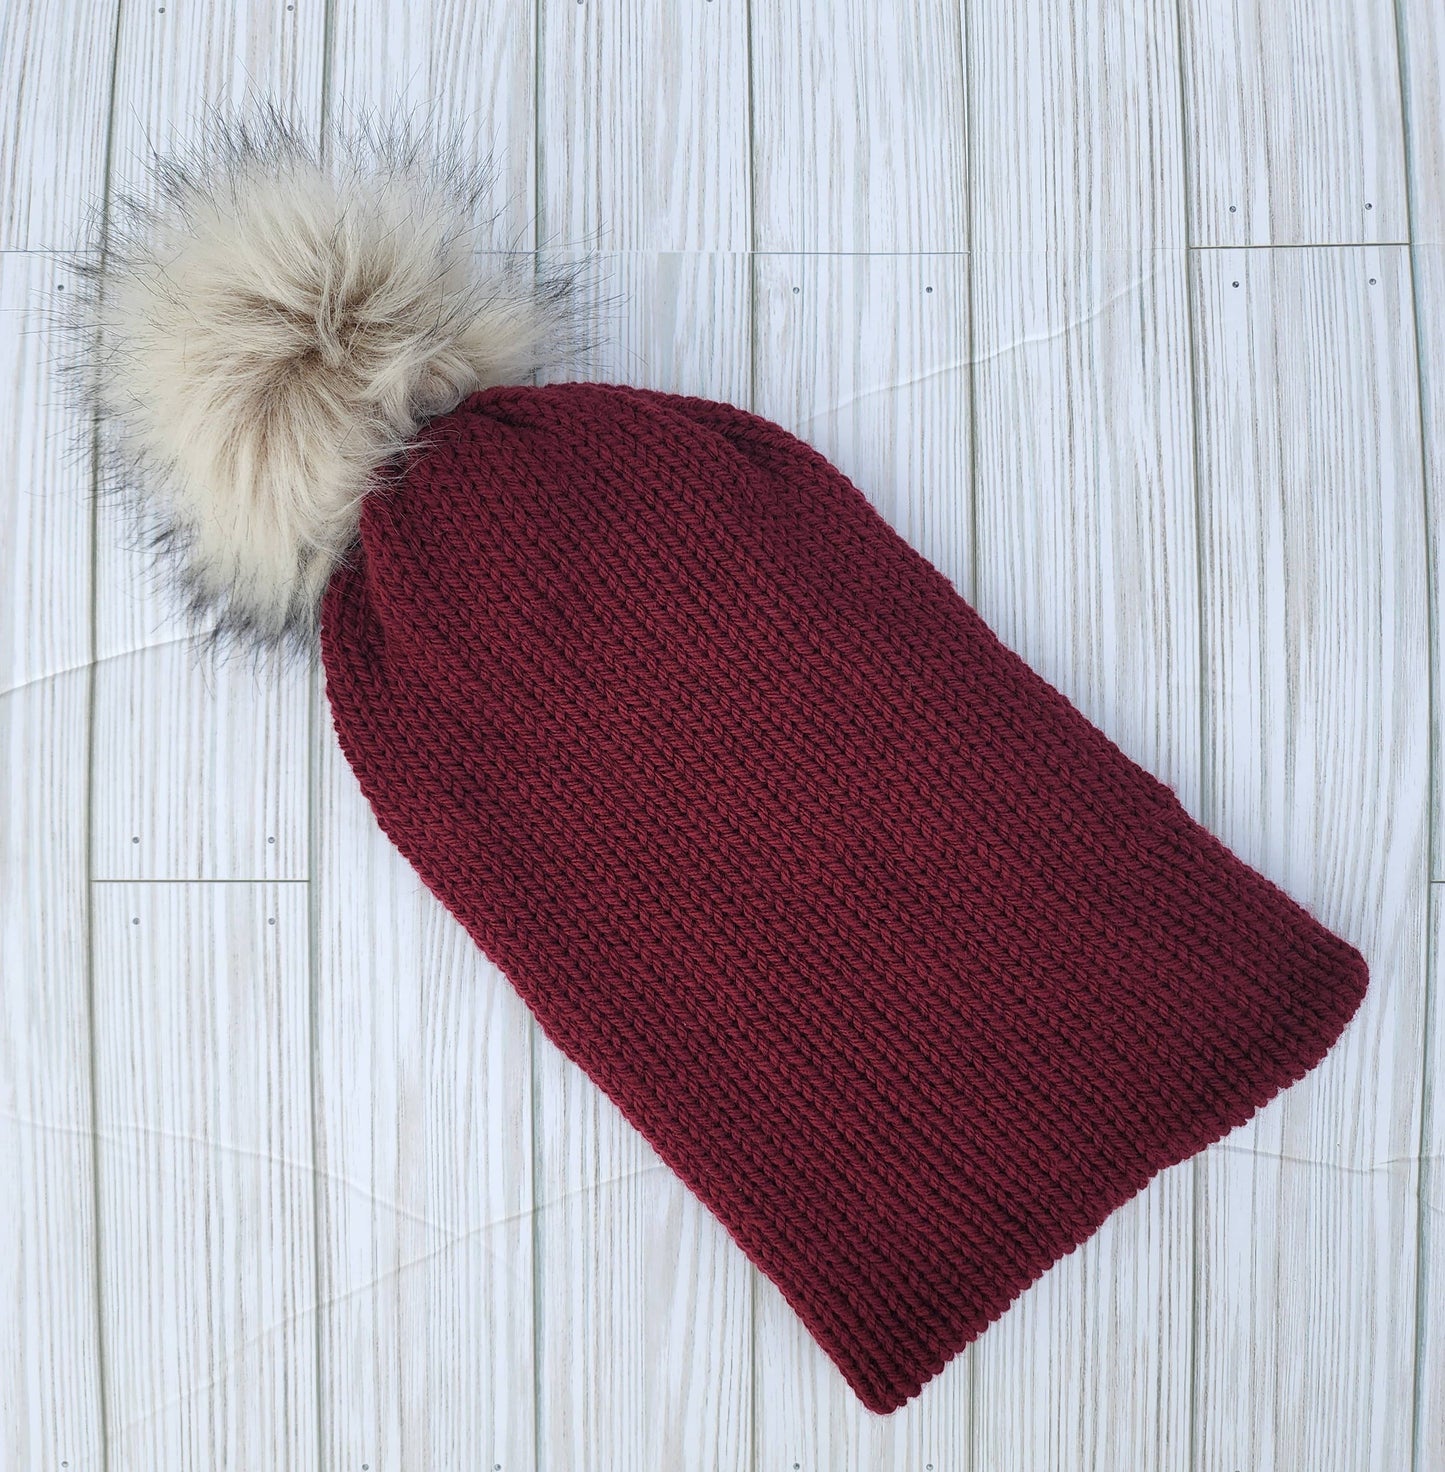 Faux Fur Pom Beanie, knit beanie, winter hat, pom pom hat: Maroon